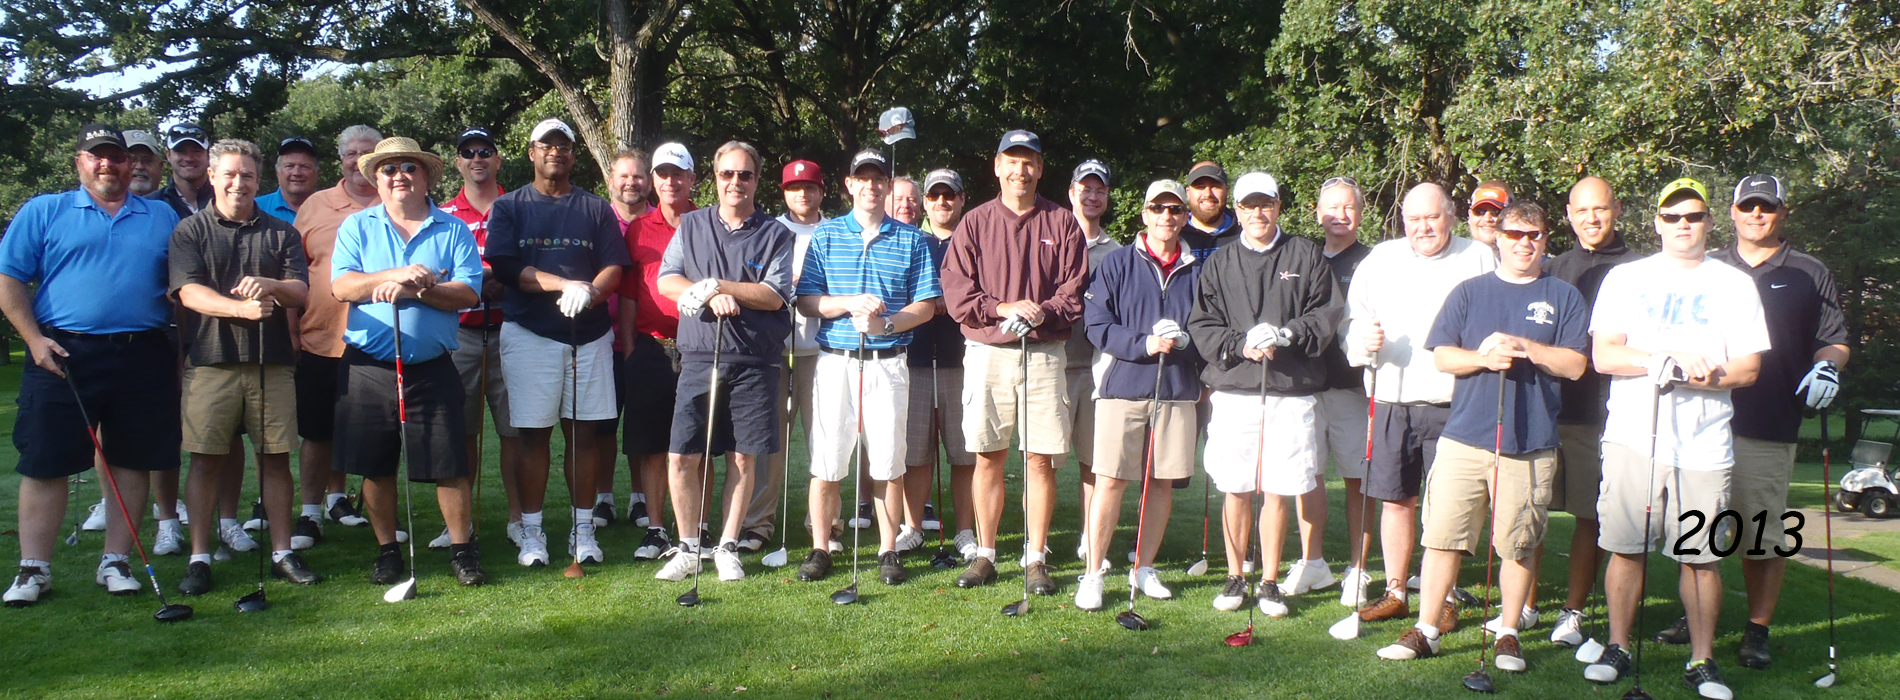 BABES Golf Tournament - 2013